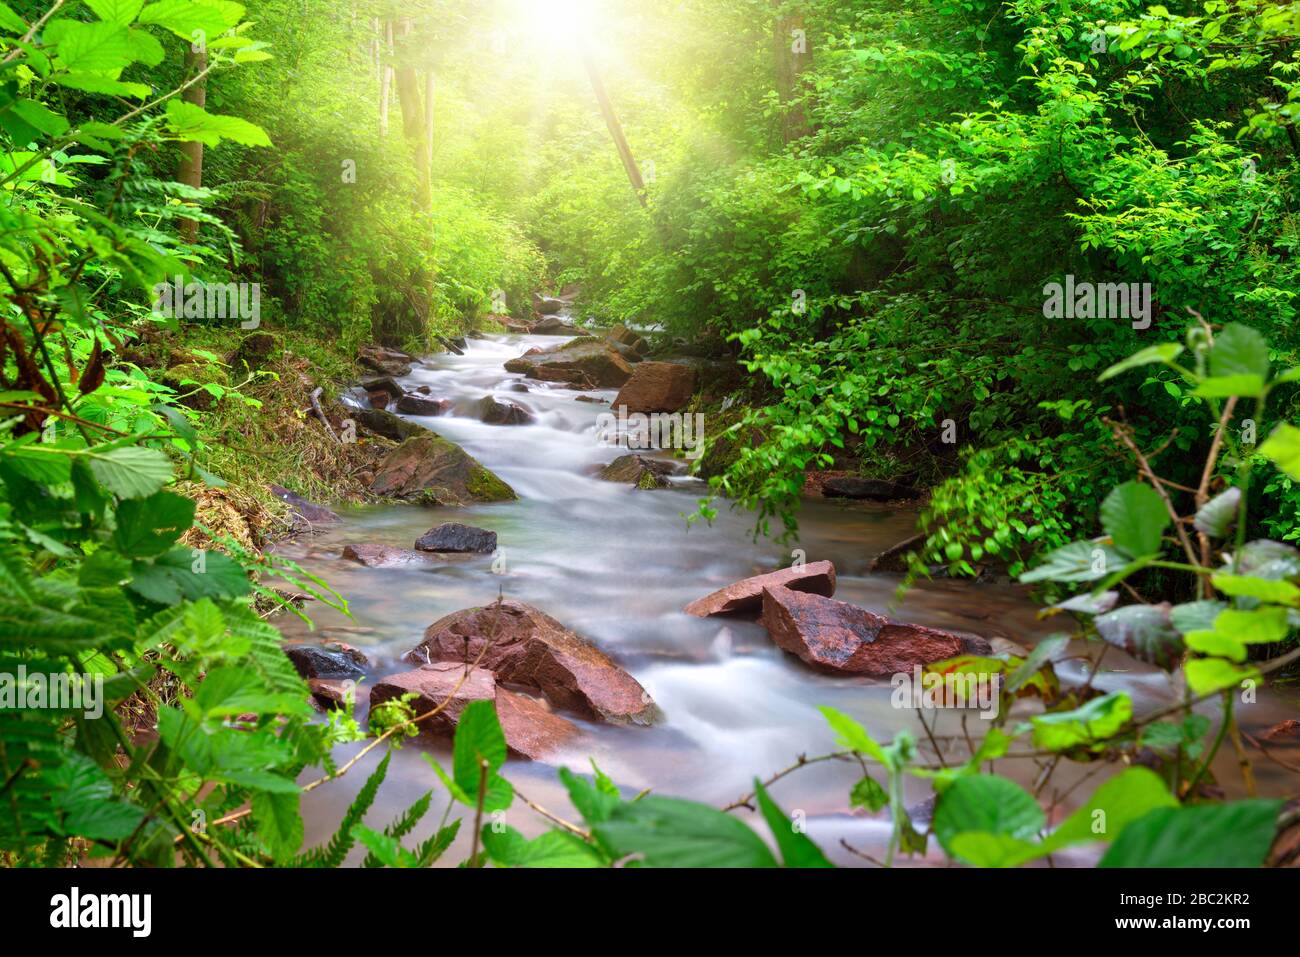 Magnifique ruisseau qui traverse une forêt verte, encadrée par un feuillage dynamique, avec des rayons du soleil illuminant la scène d'en haut Banque D'Images